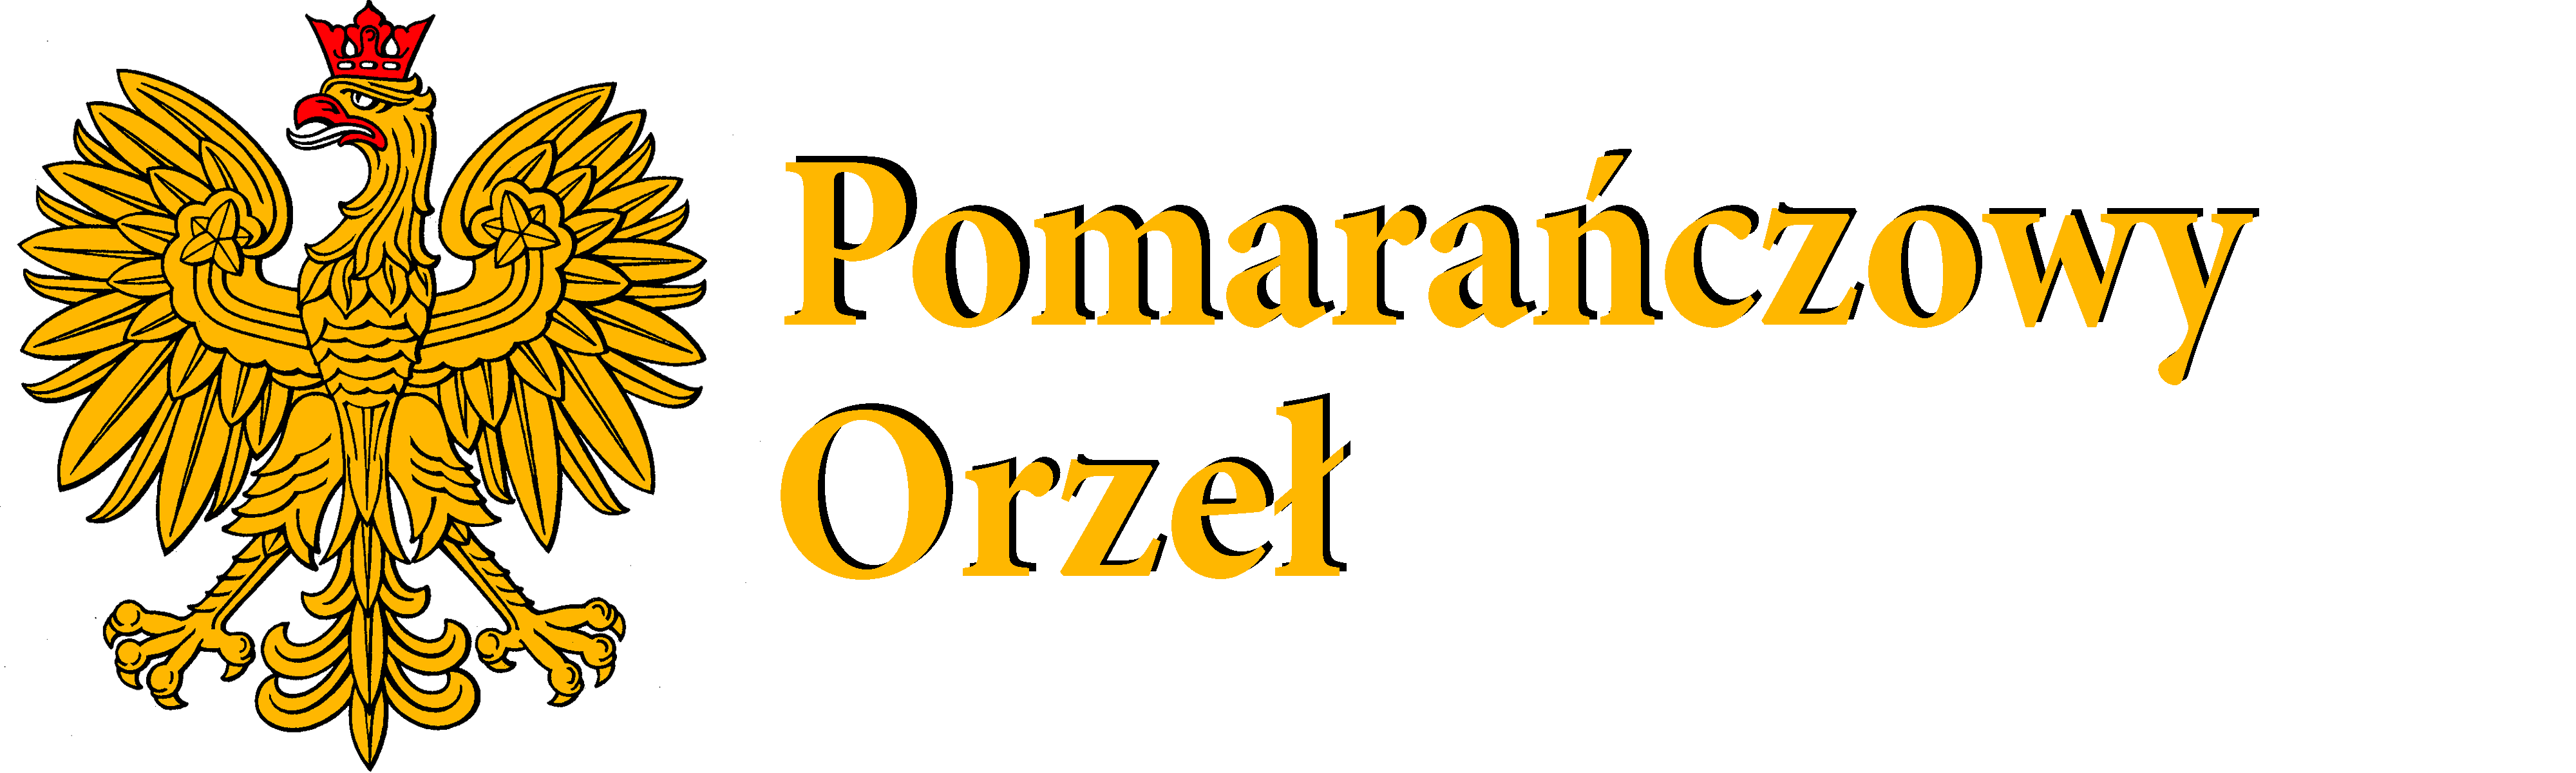 Pomarańczowy Orzeł Logo